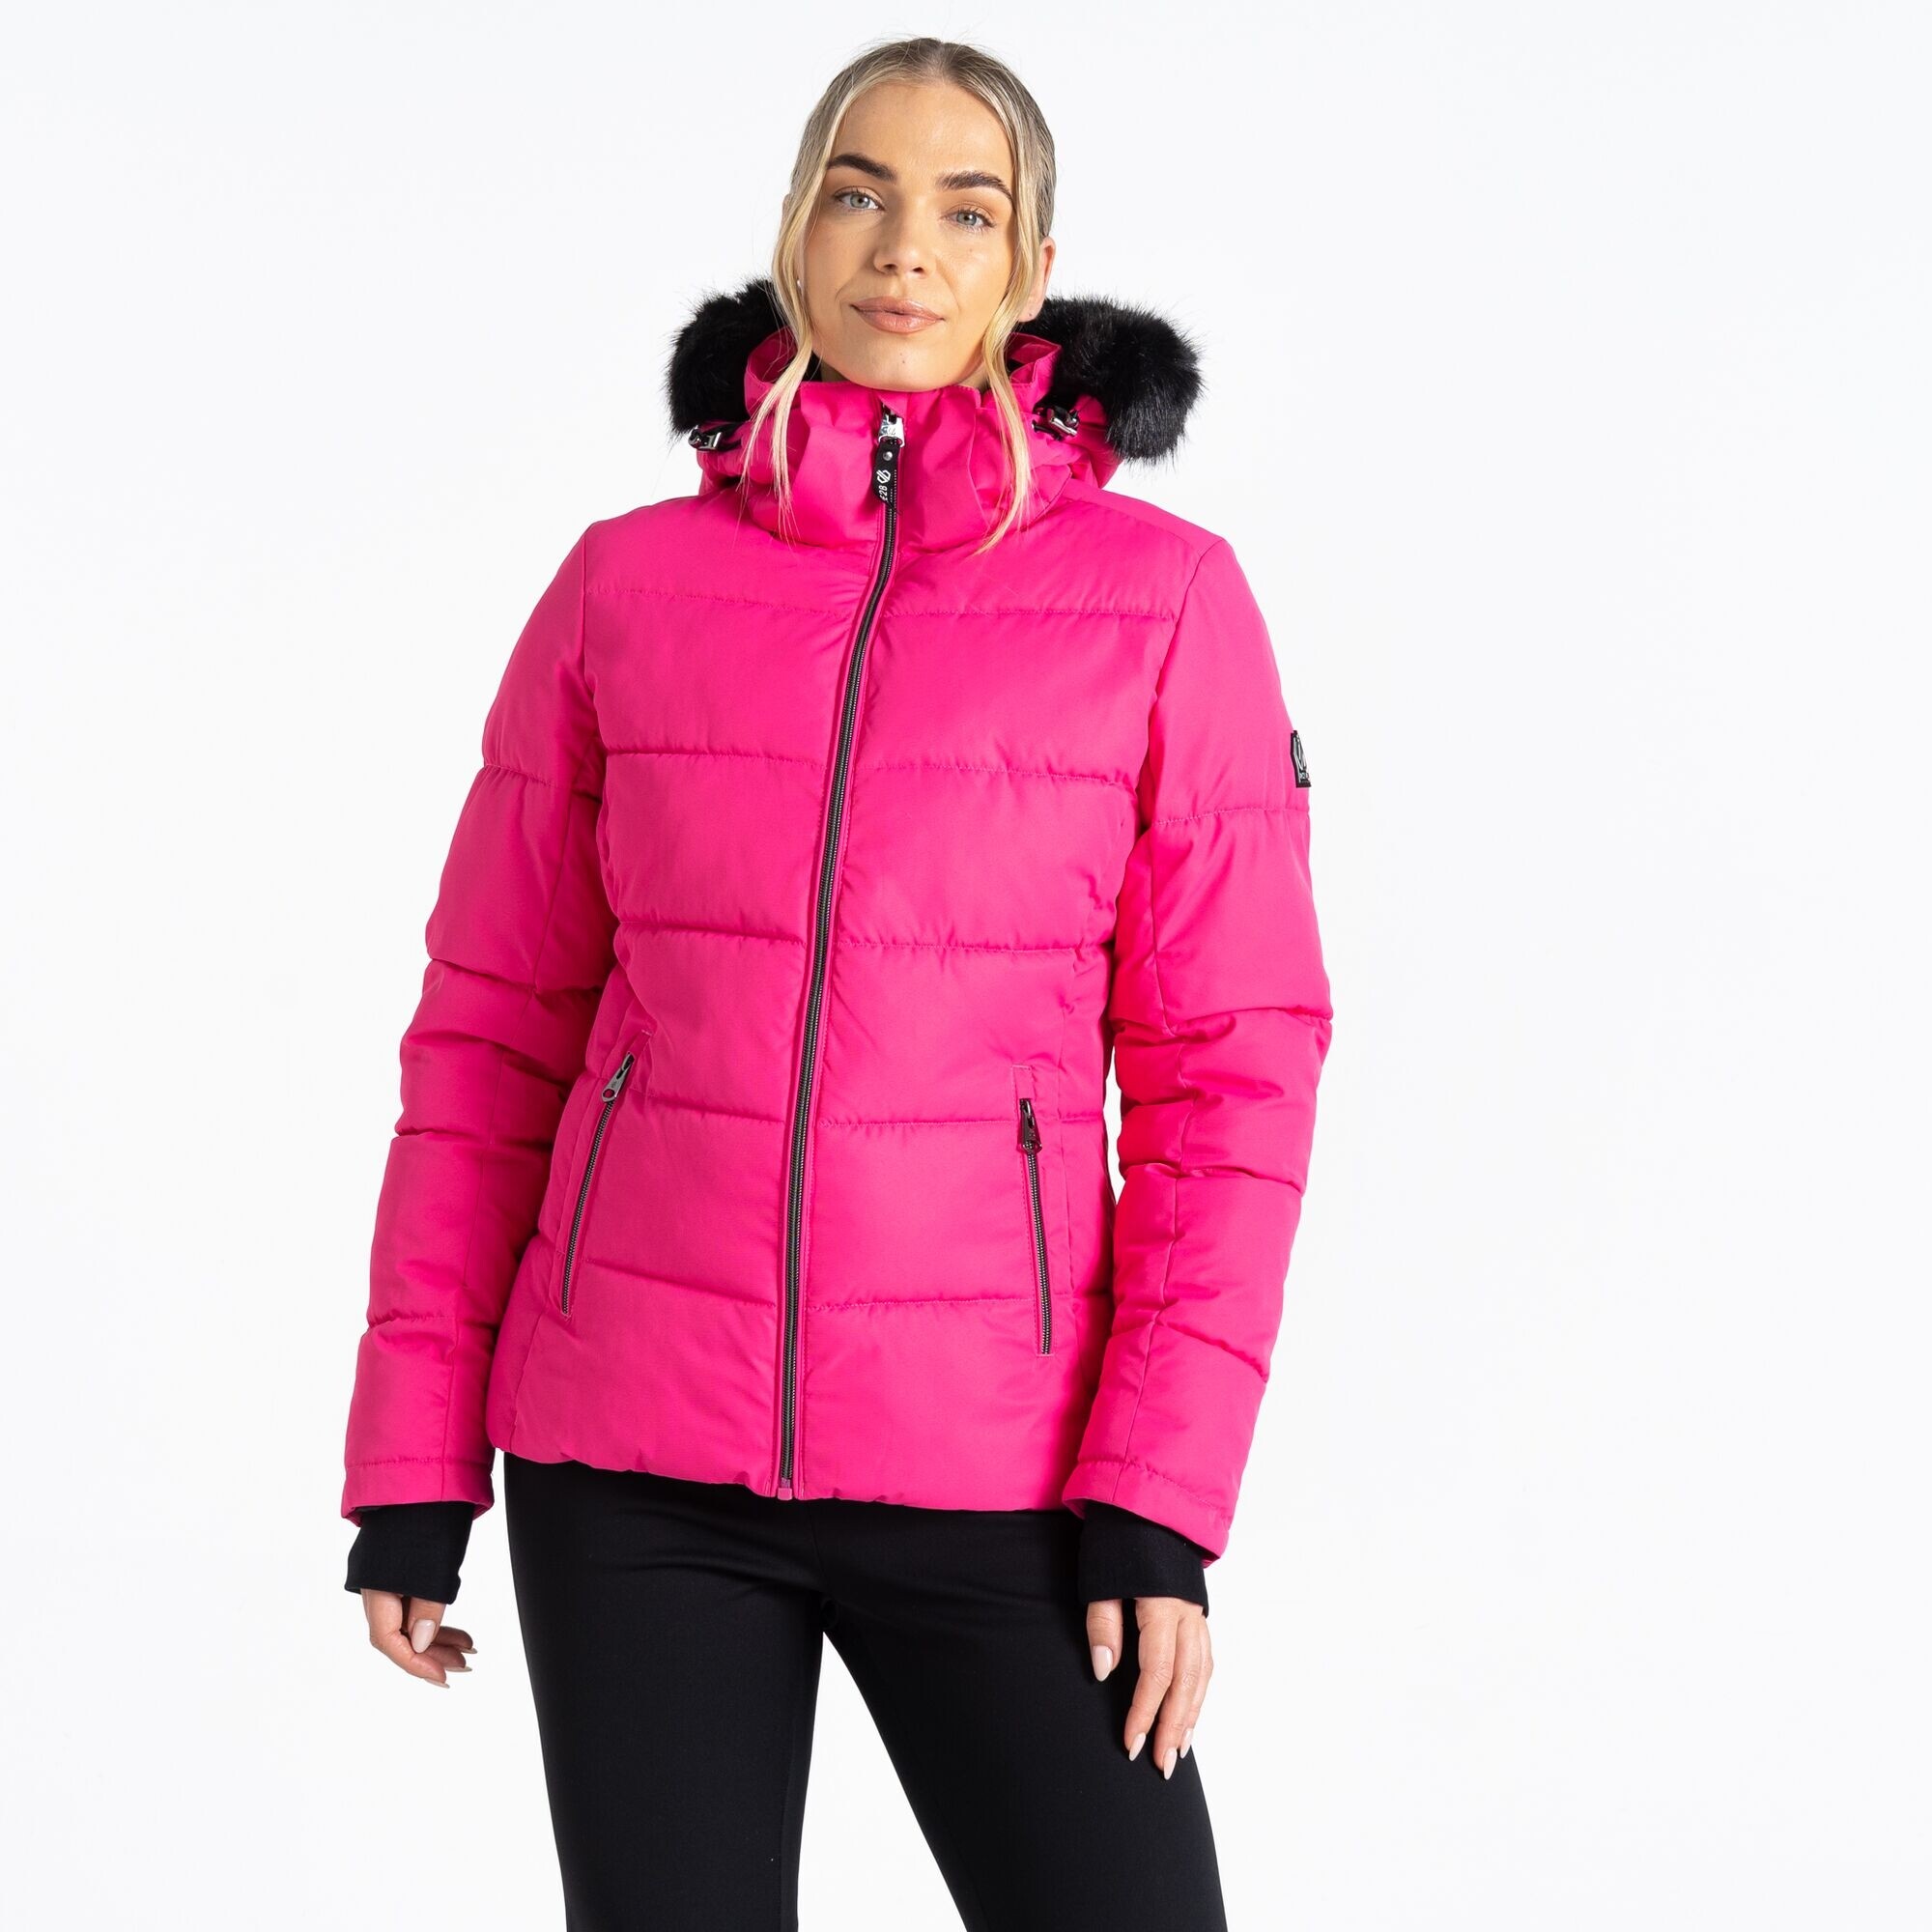 Dámská lyžařská bunda Glamorize IV DWP576-829 neon růžová - Dare2B 42